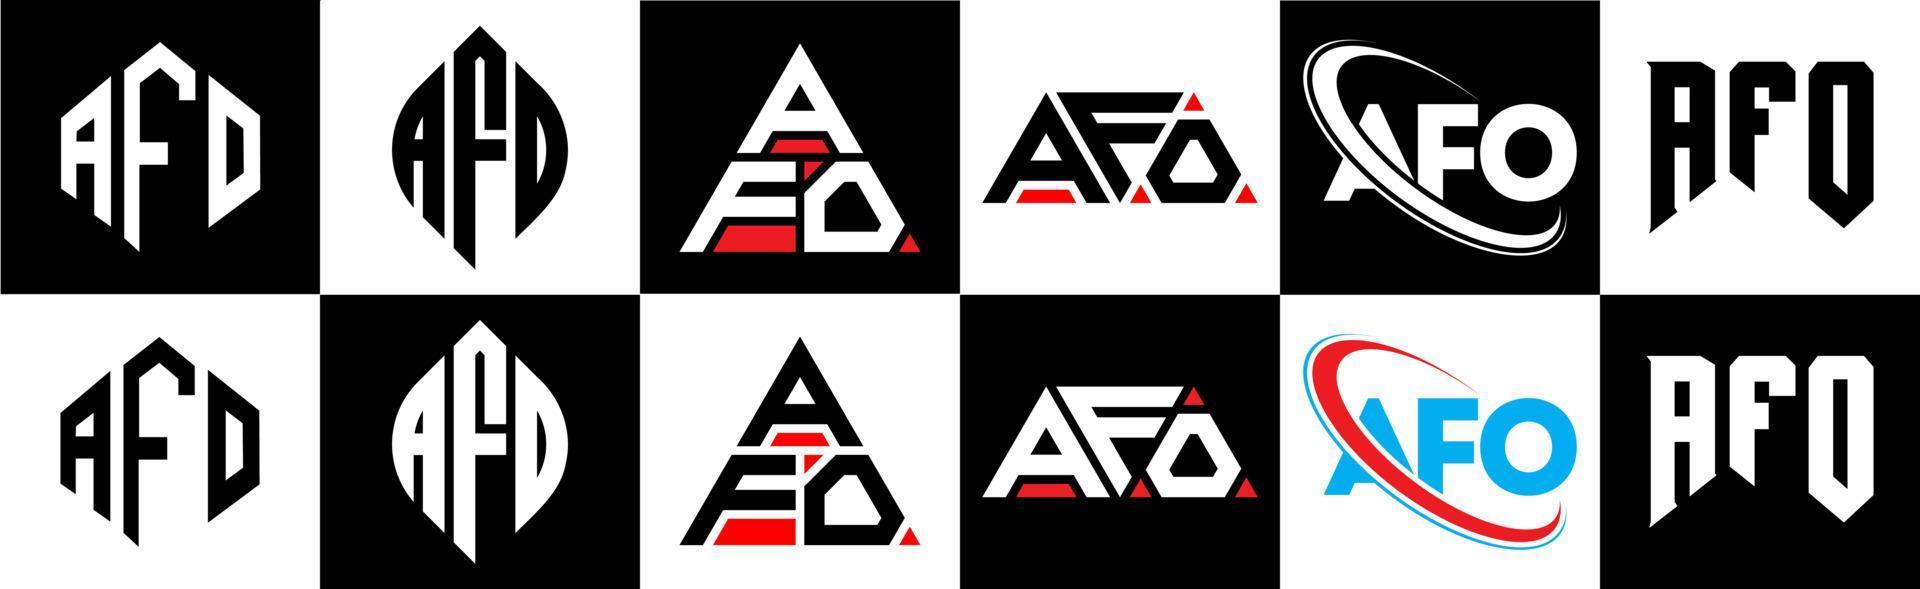 Afo-Buchstaben-Logo-Design in sechs Stilen. Afo-Polygon, Kreis, Dreieck, Sechseck, flacher und einfacher Stil mit schwarz-weißem Buchstabenlogo in einer Zeichenfläche. Afo minimalistisches und klassisches Logo vektor